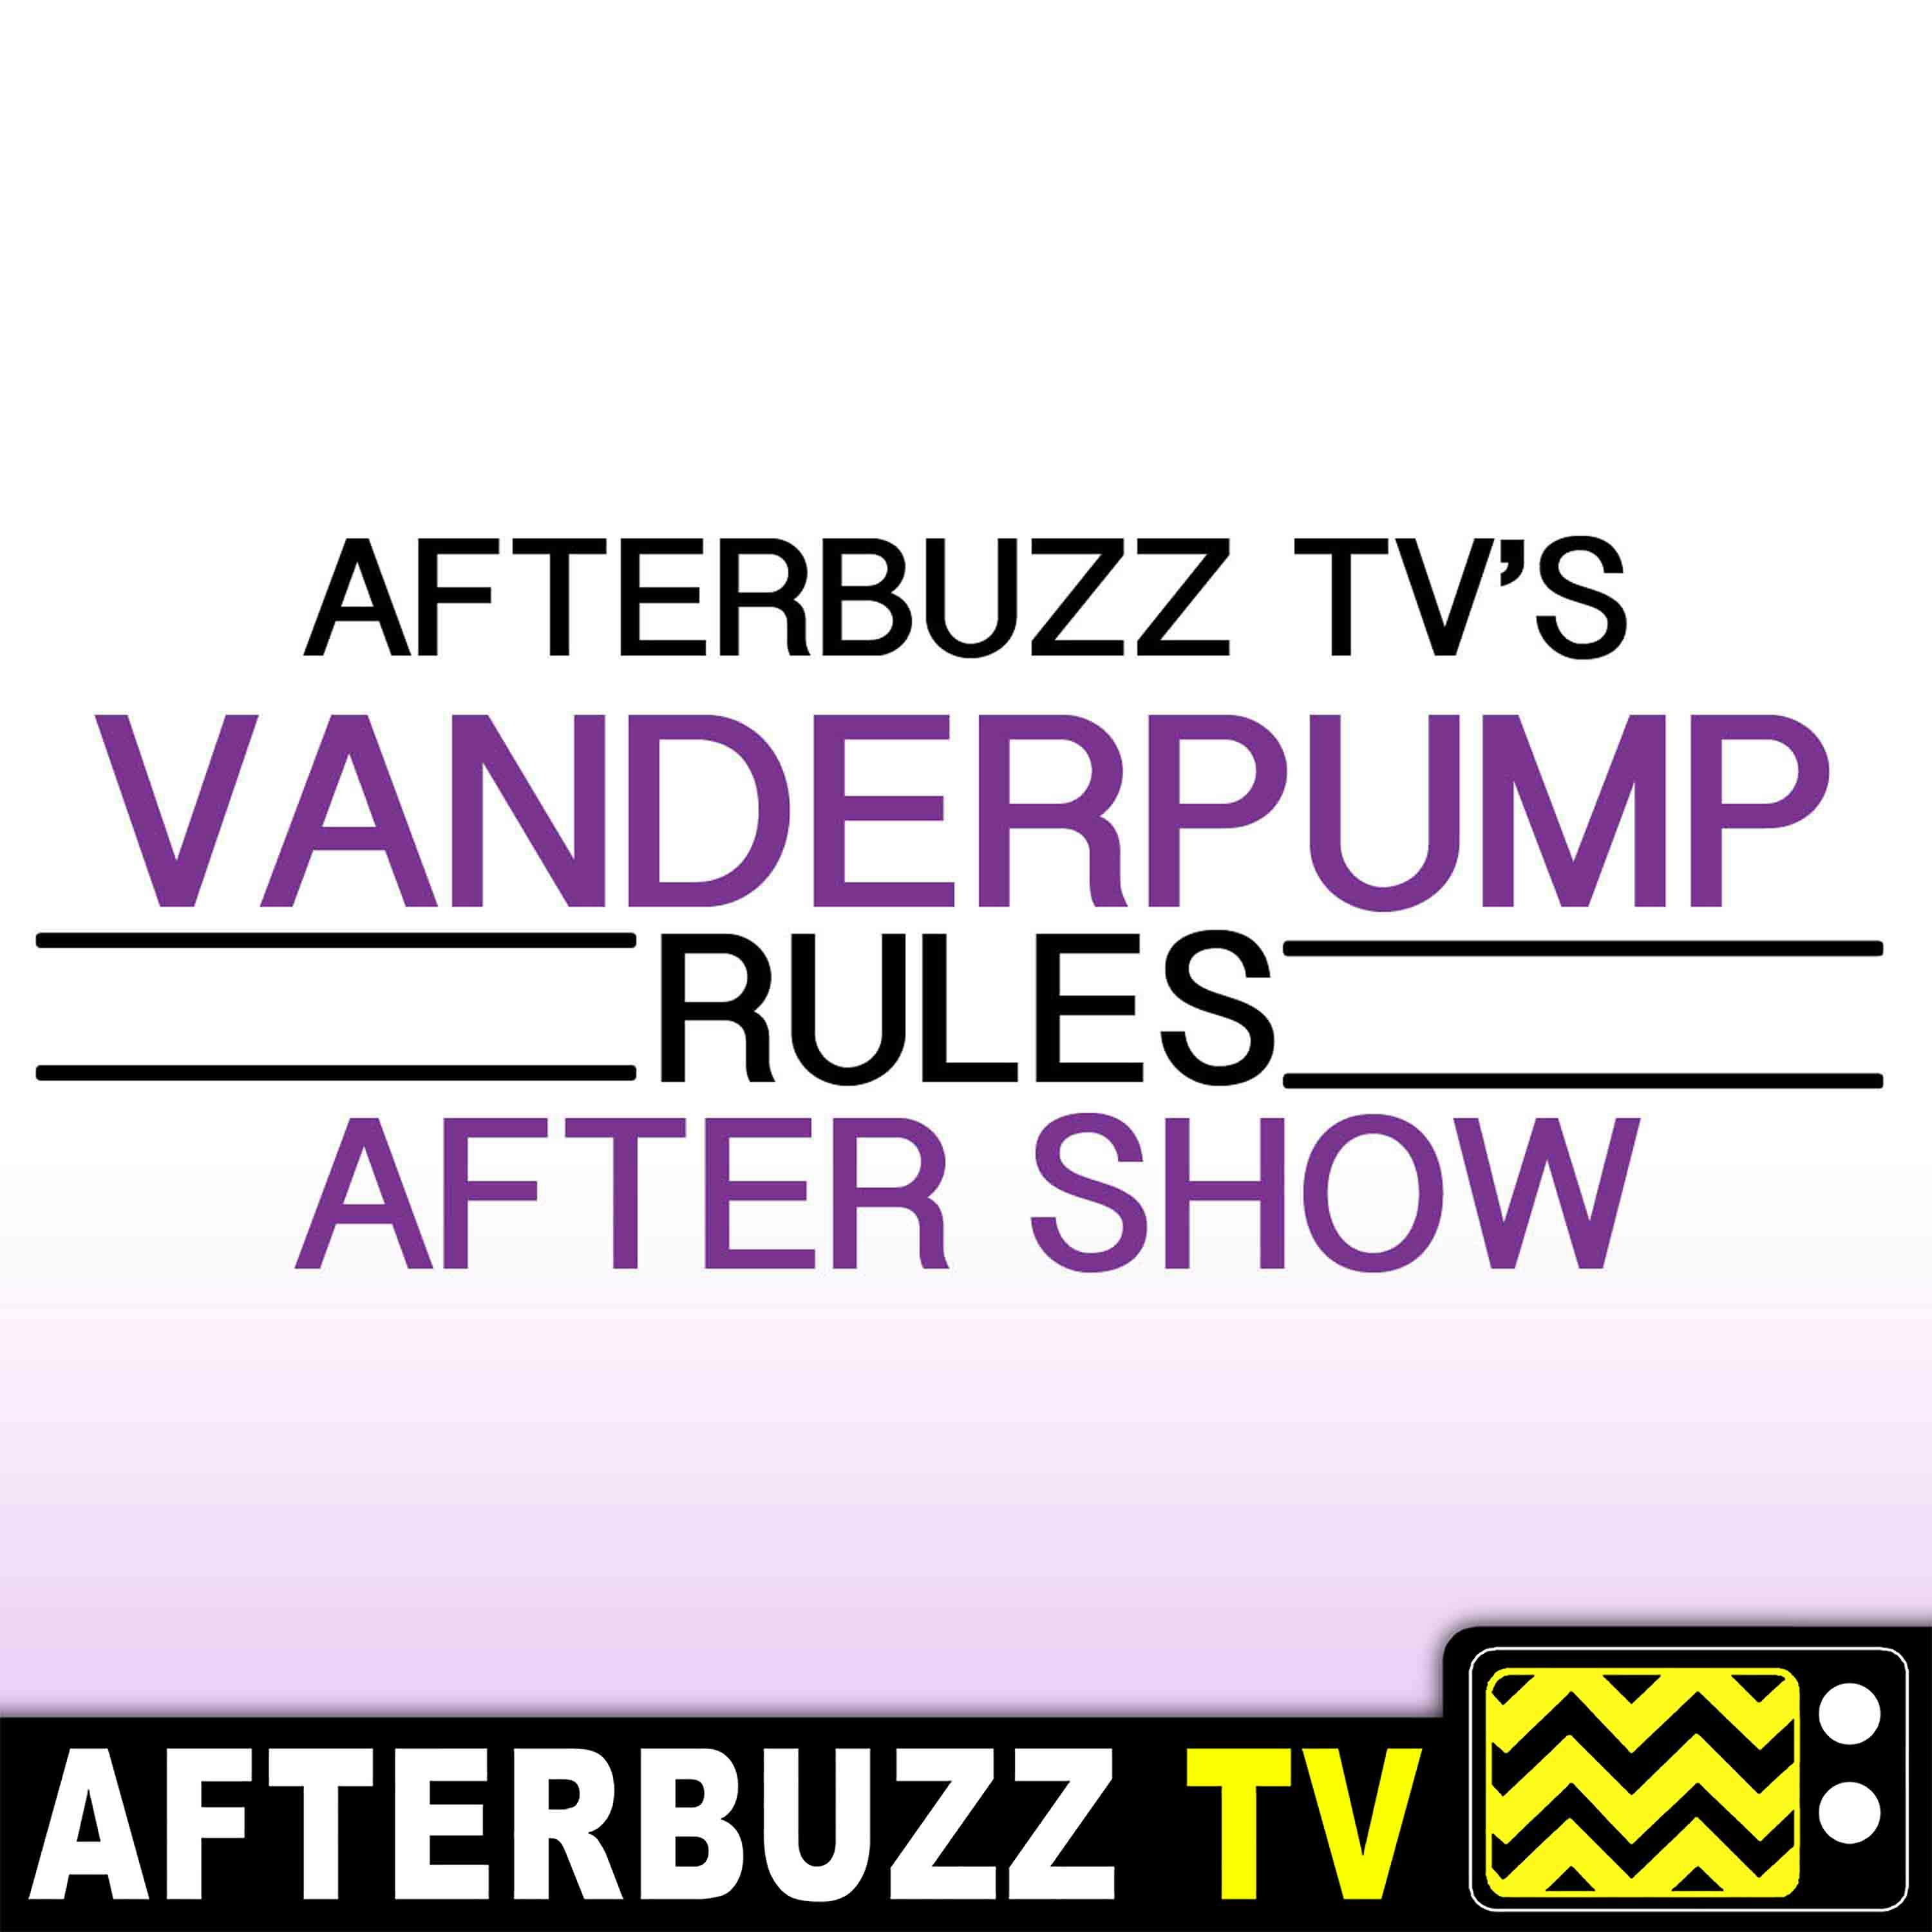 ”Reunion Part 1” Season 7 Episode 21 ’Vanderpump Rules’ Review